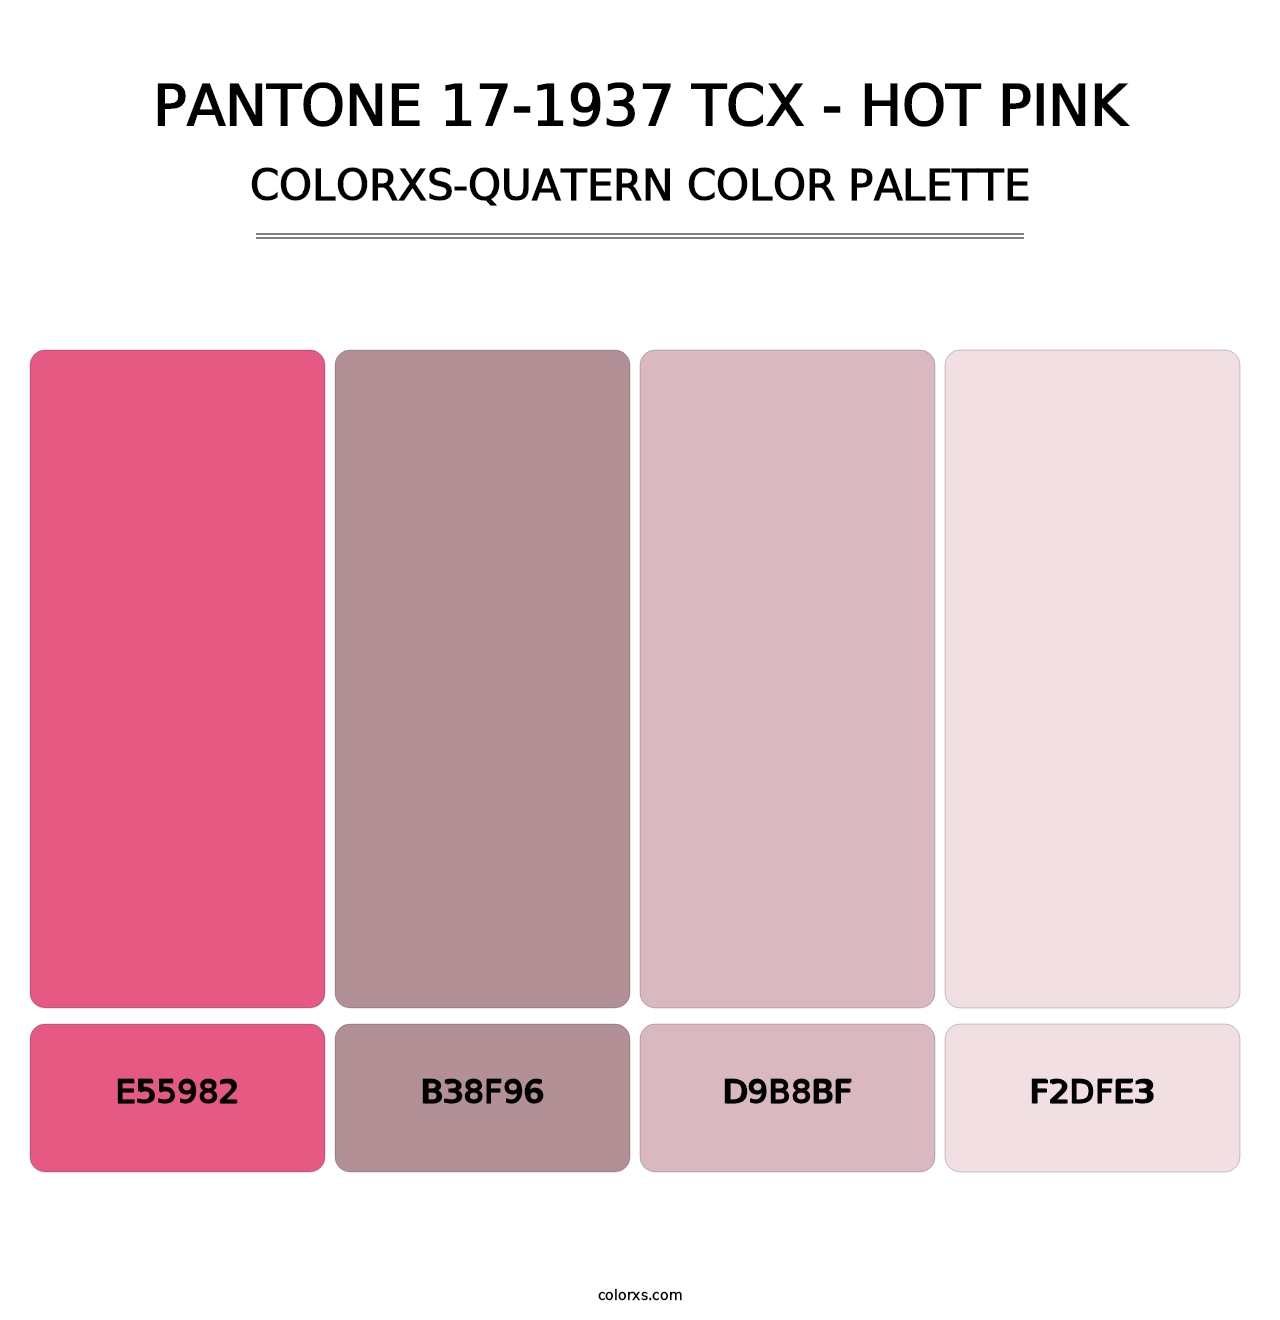 PANTONE 17-1937 TCX - Hot Pink - Colorxs Quatern Palette